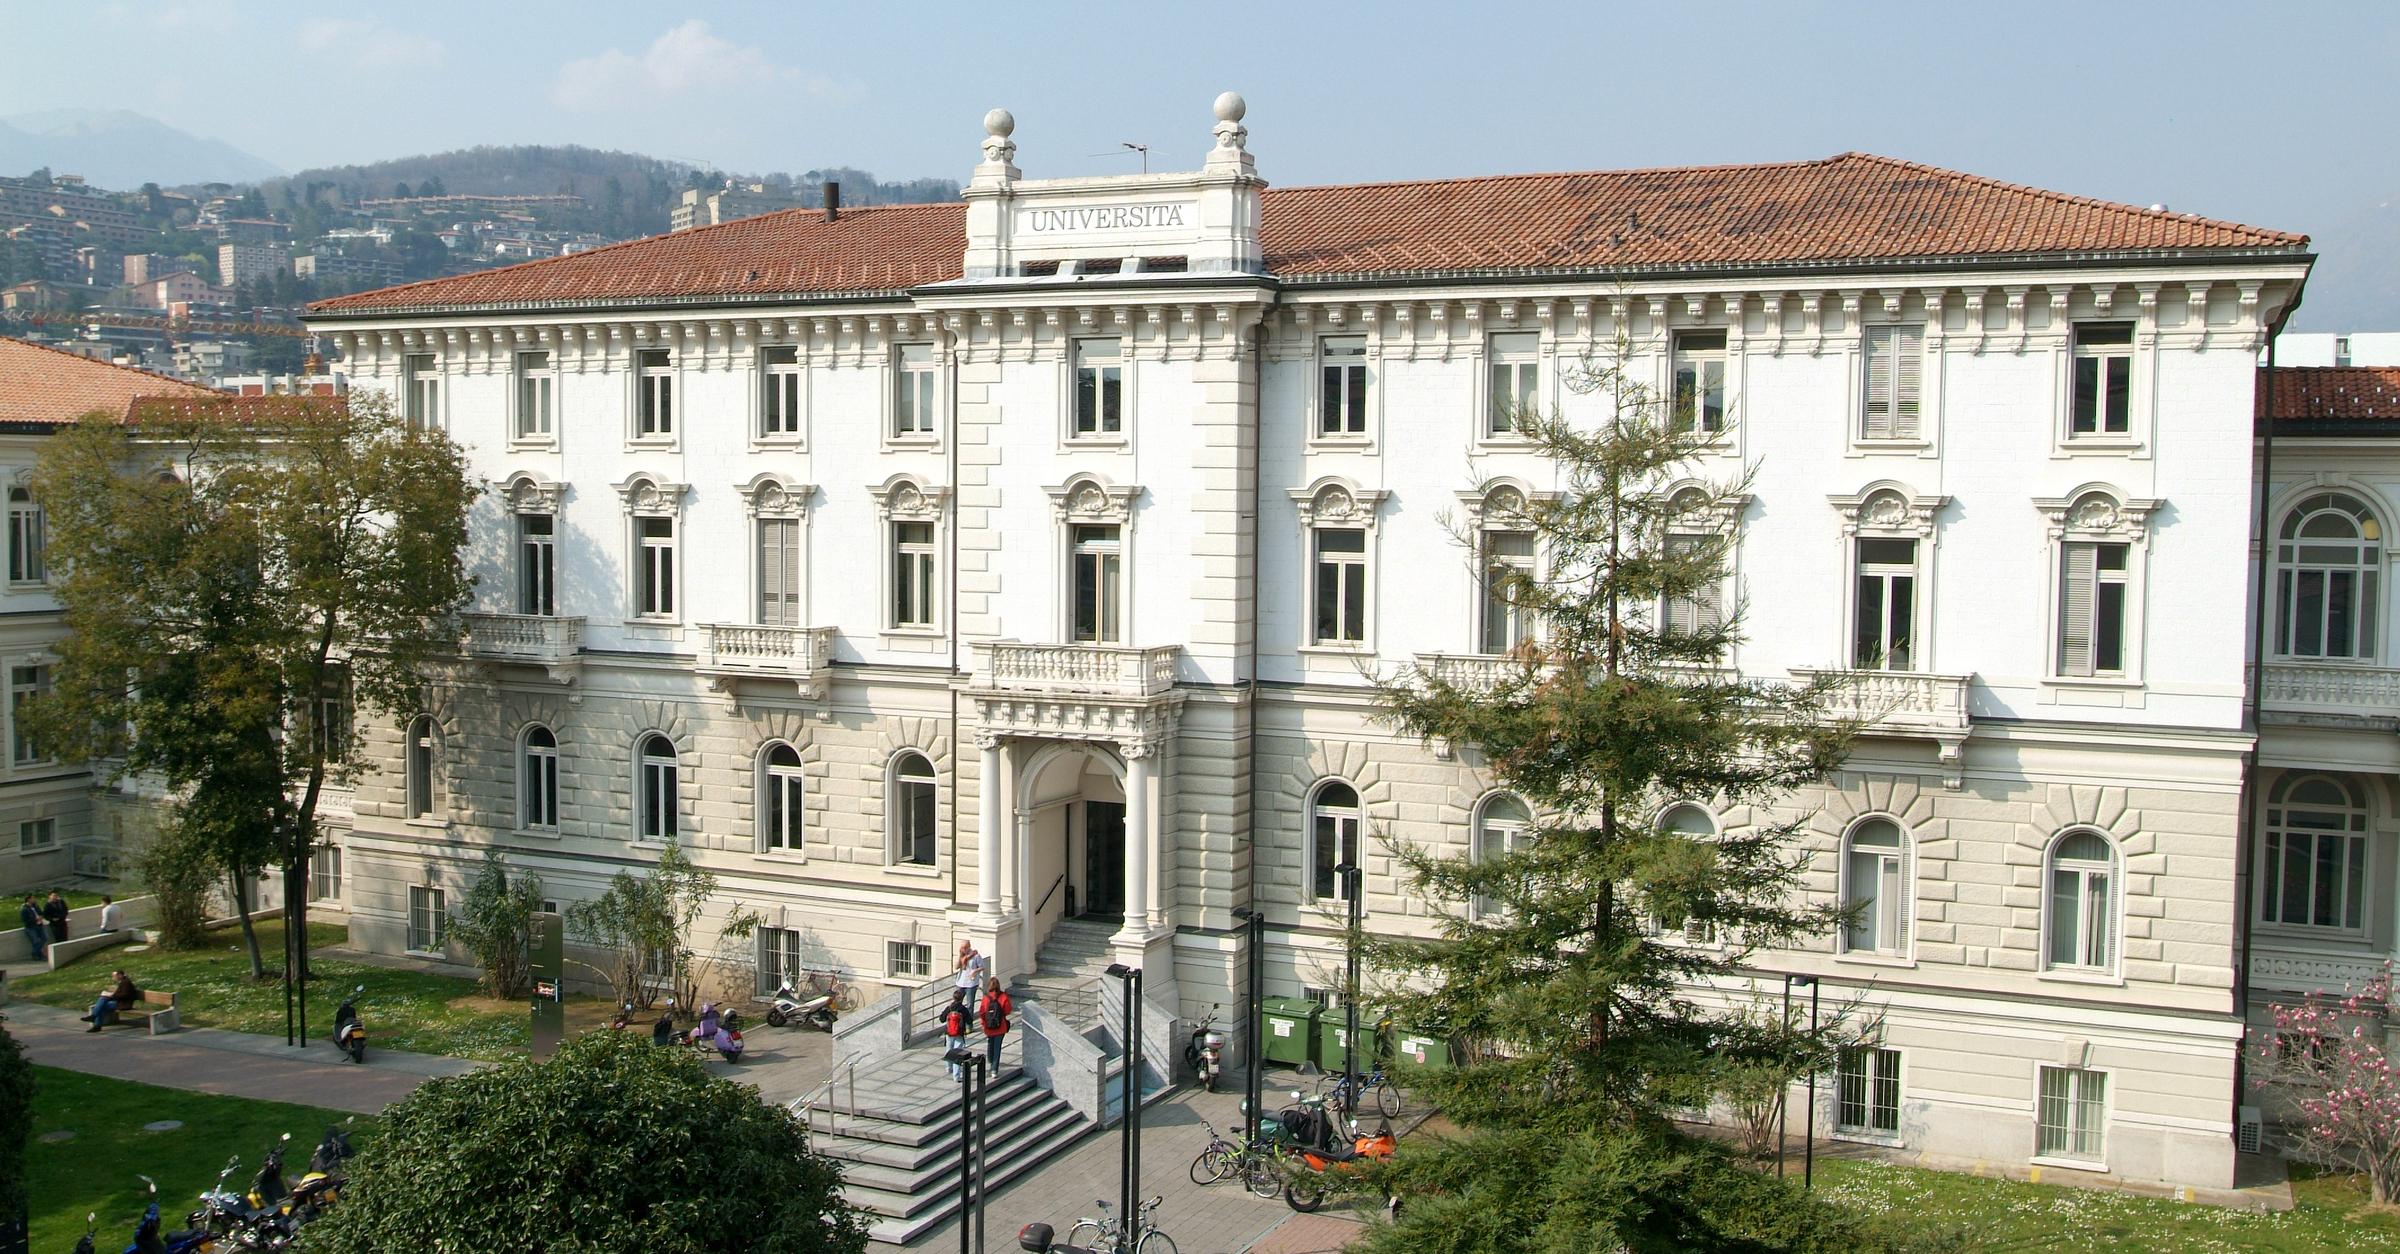 Studiare a Lugano, come ottenere il massimo dalla tua esperienza universitaria